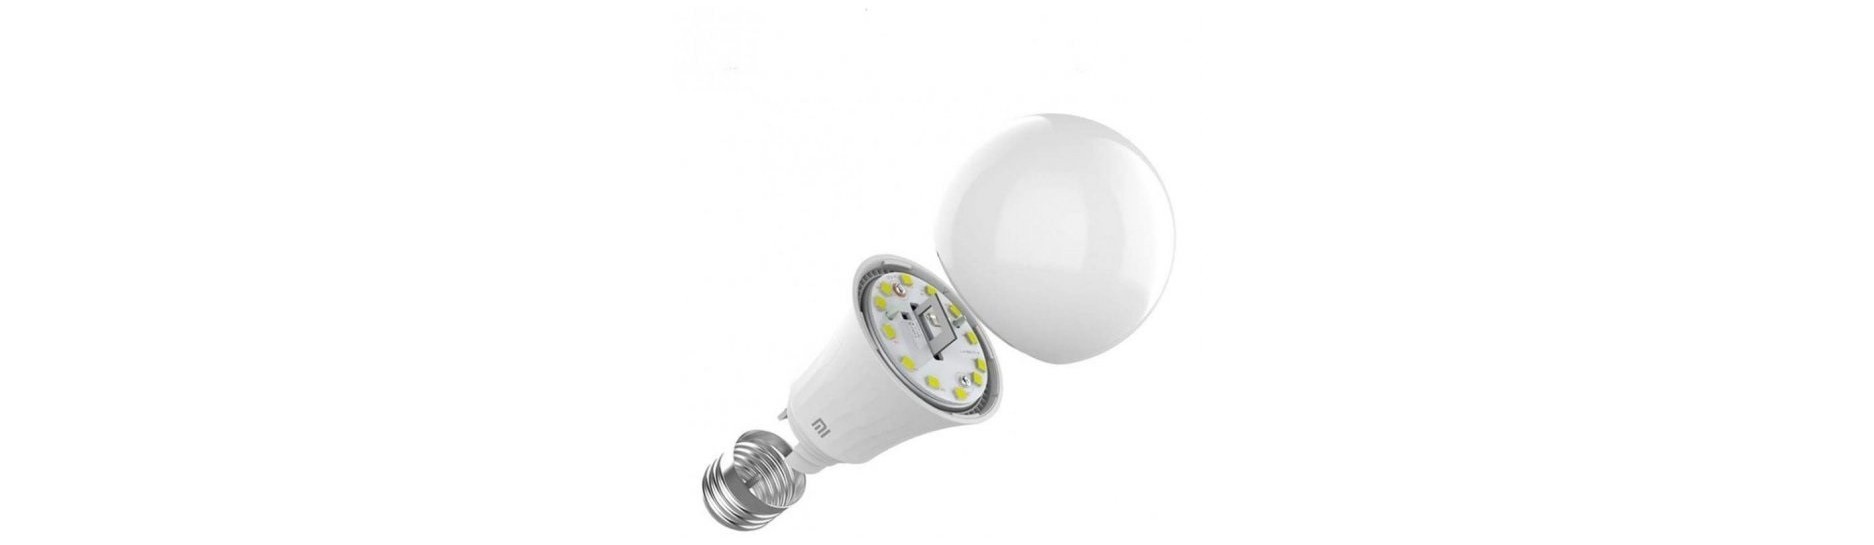 LED Iluminación y Accesorios | Comprar LED Iluminación y Accesorios